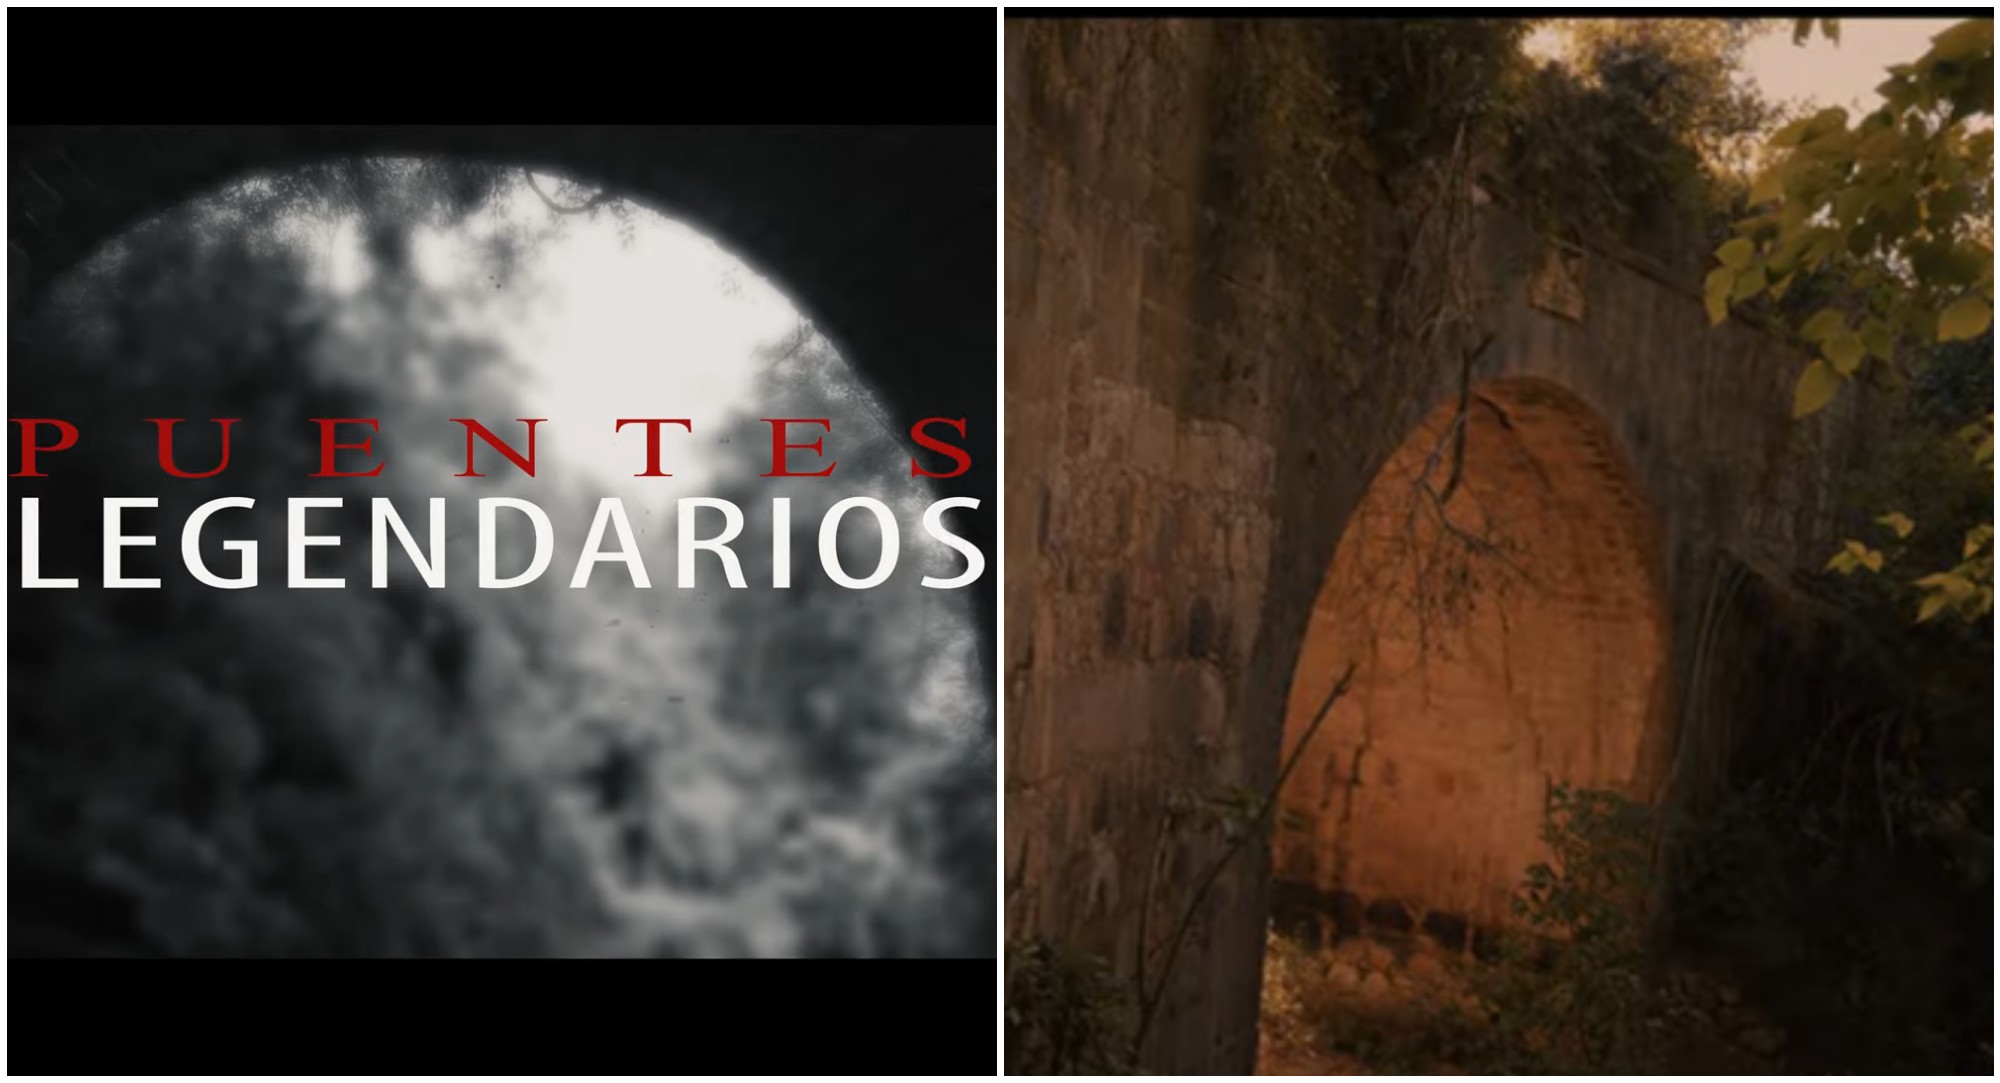 Hondureños crean documental sobre los puentes legendarios de Honduras